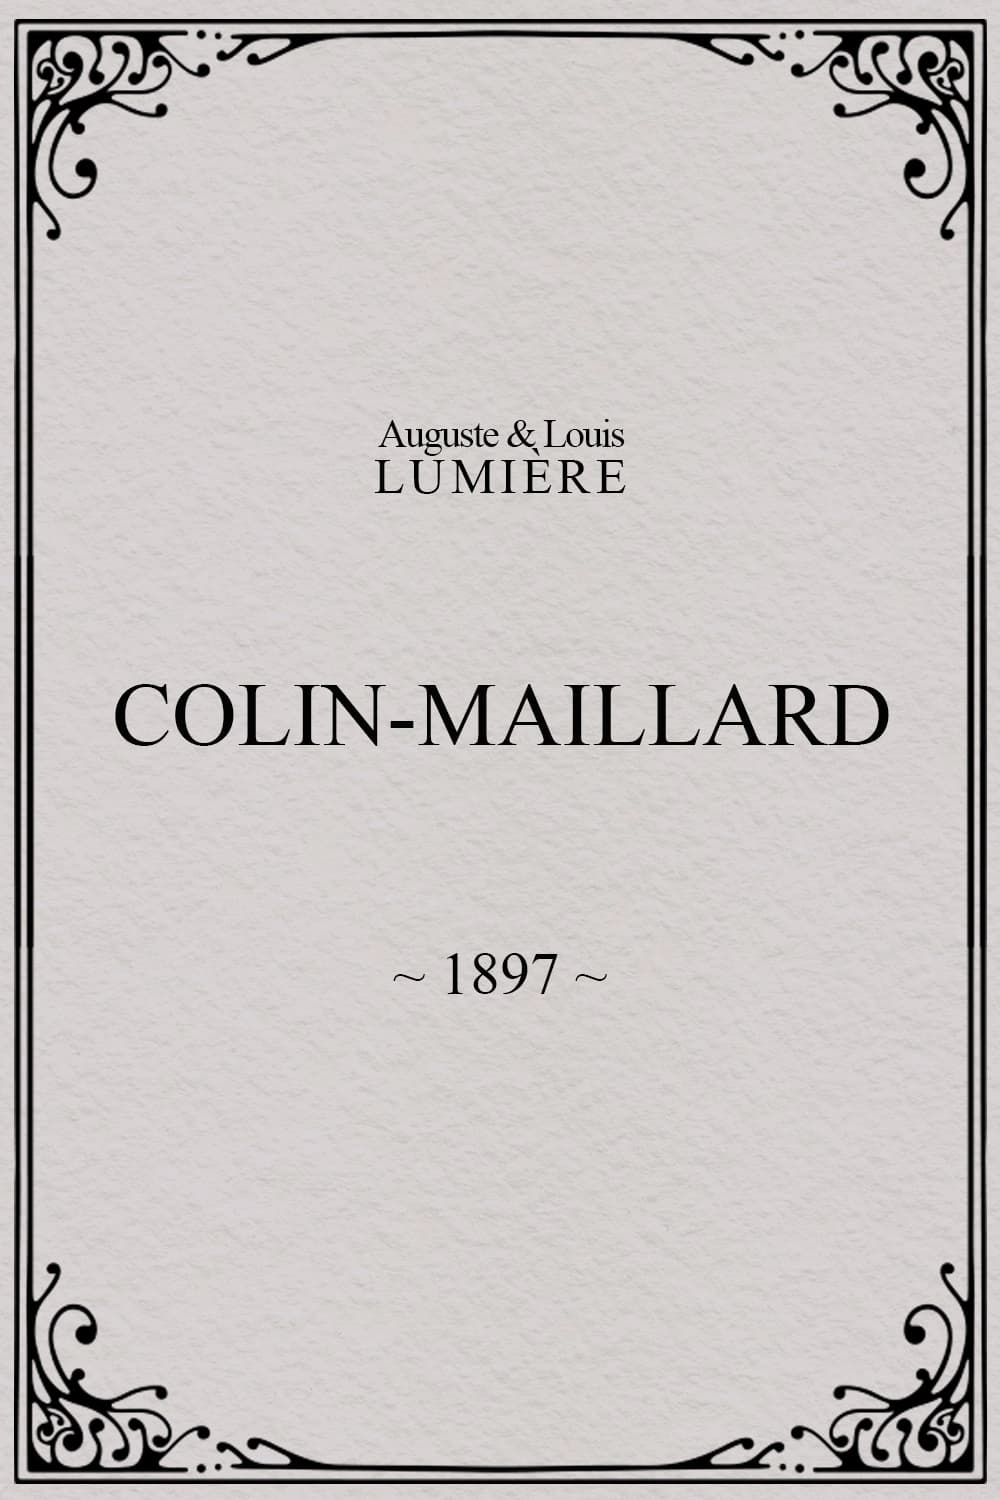 Colin-maillard (1897)